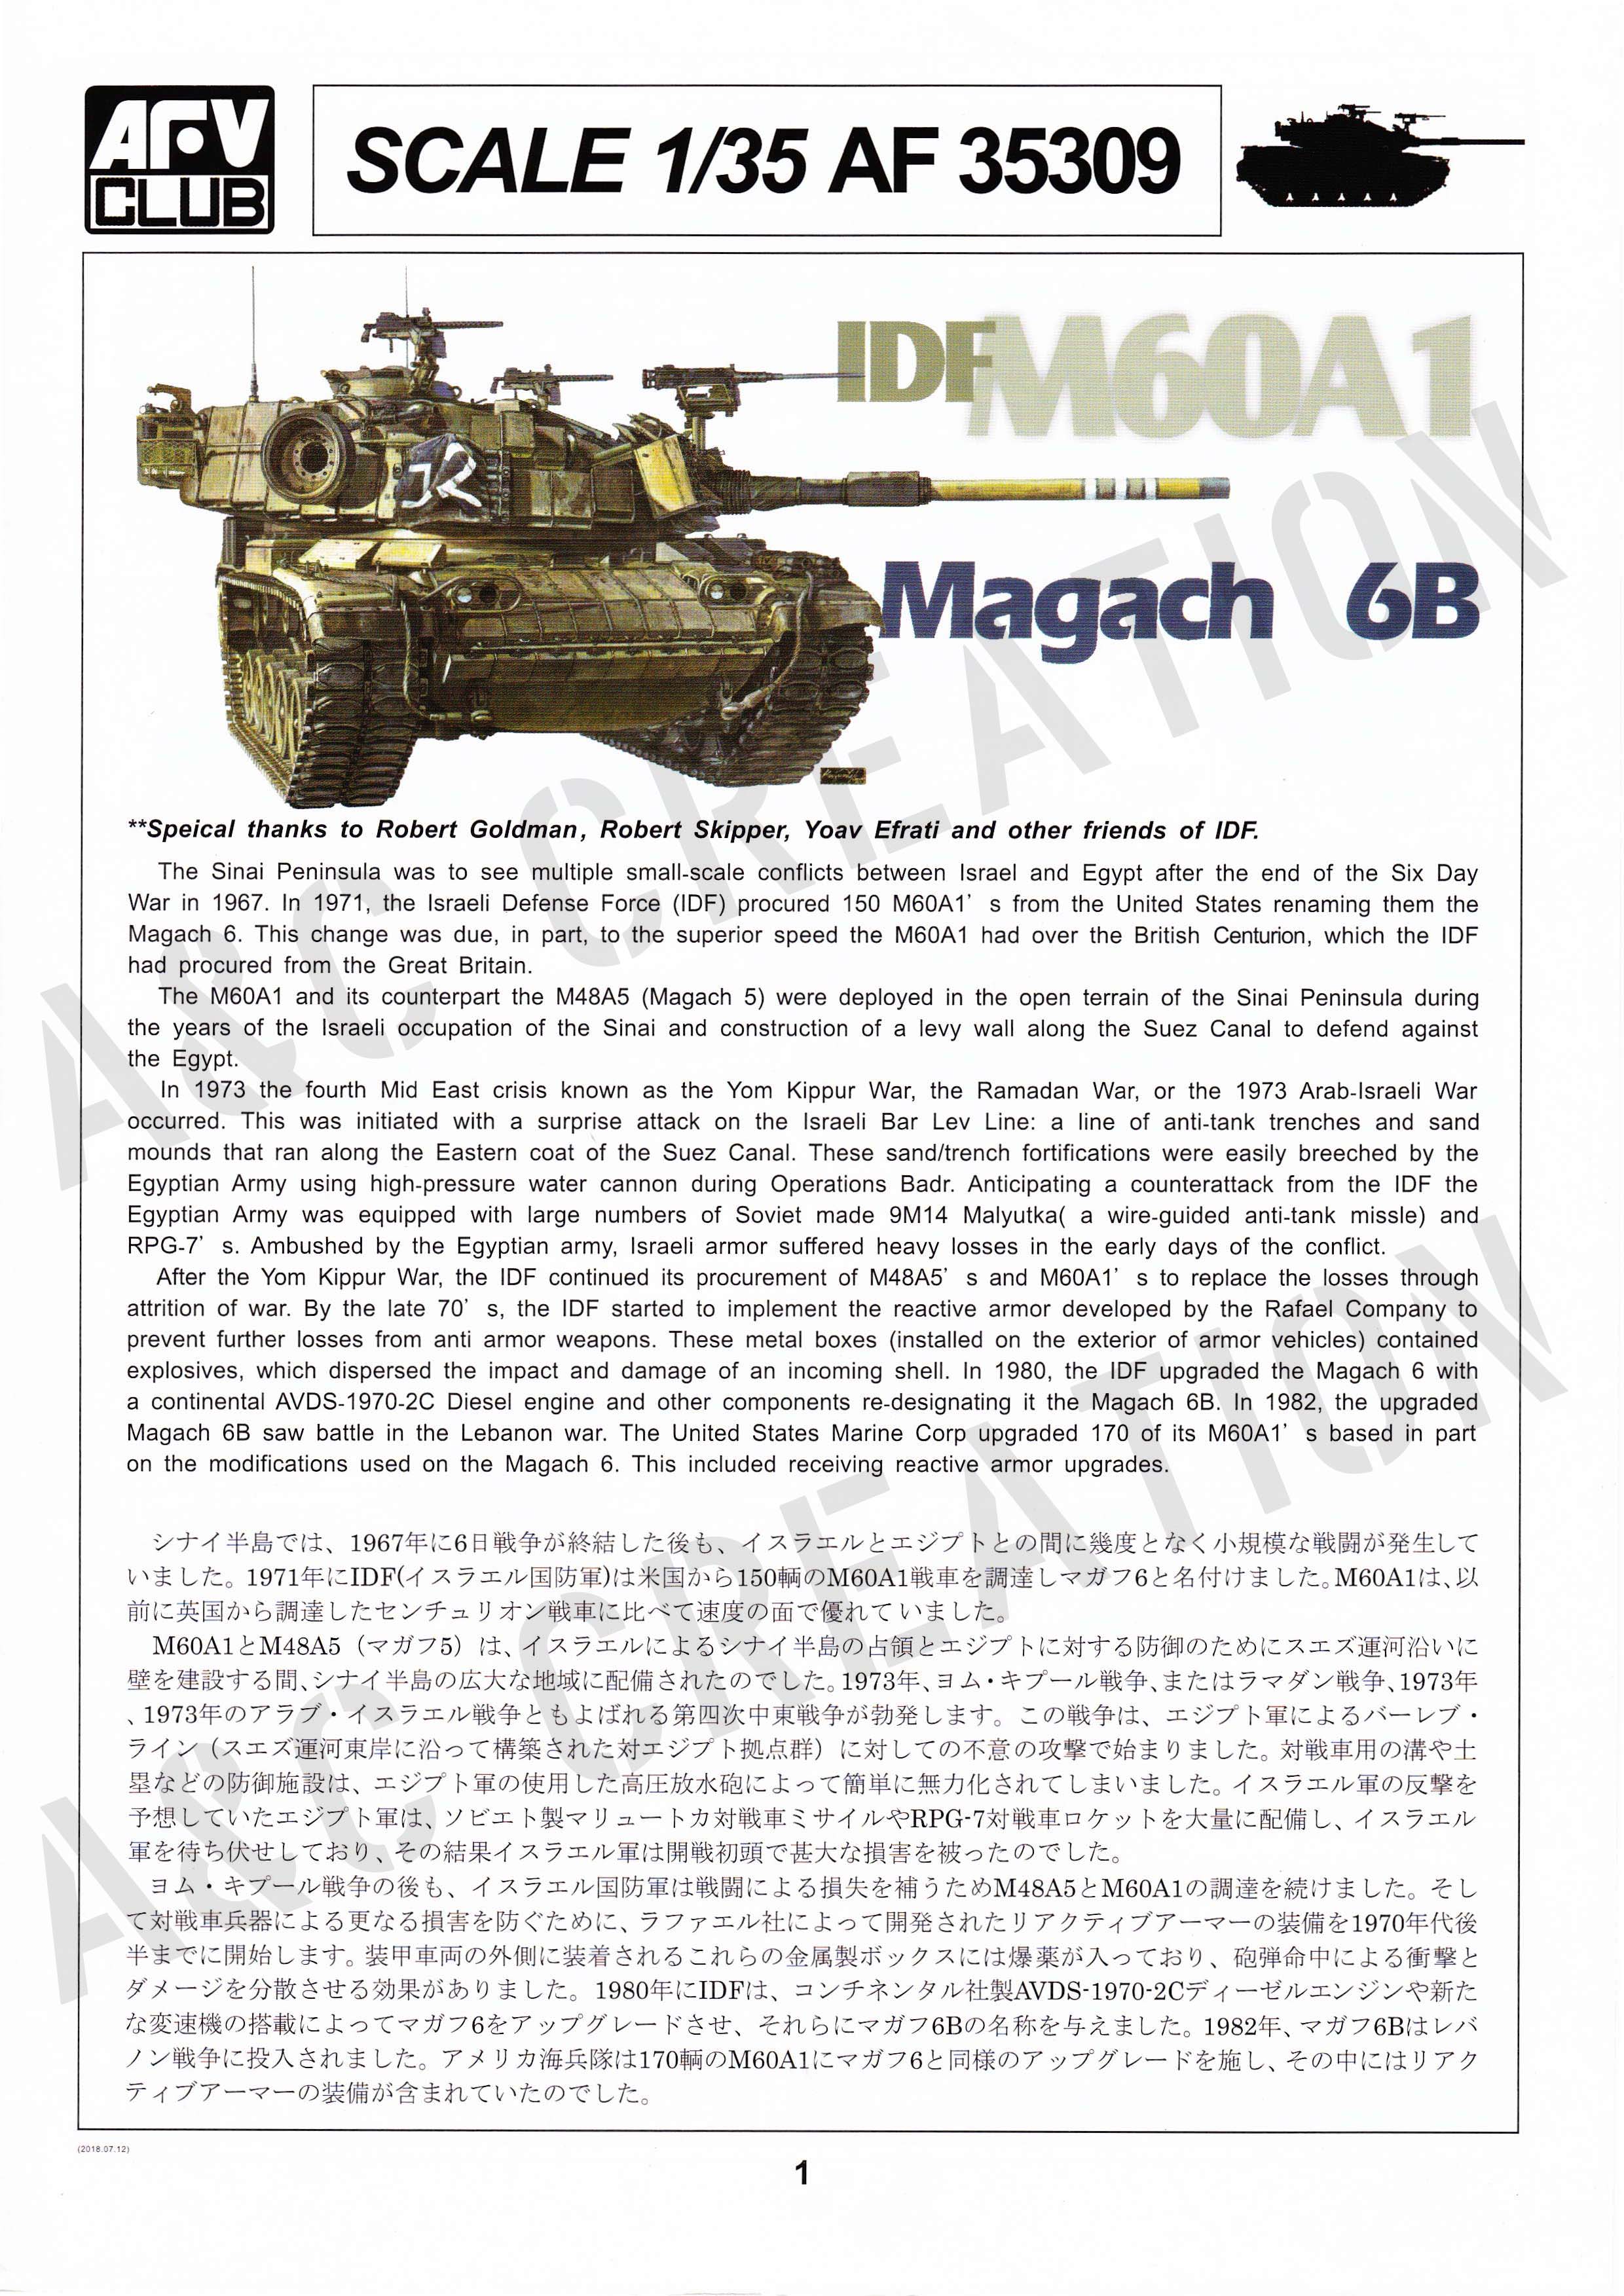 AFV Club 1/35 IDF M60a1 Magach 6b Armour AF35309 for sale online